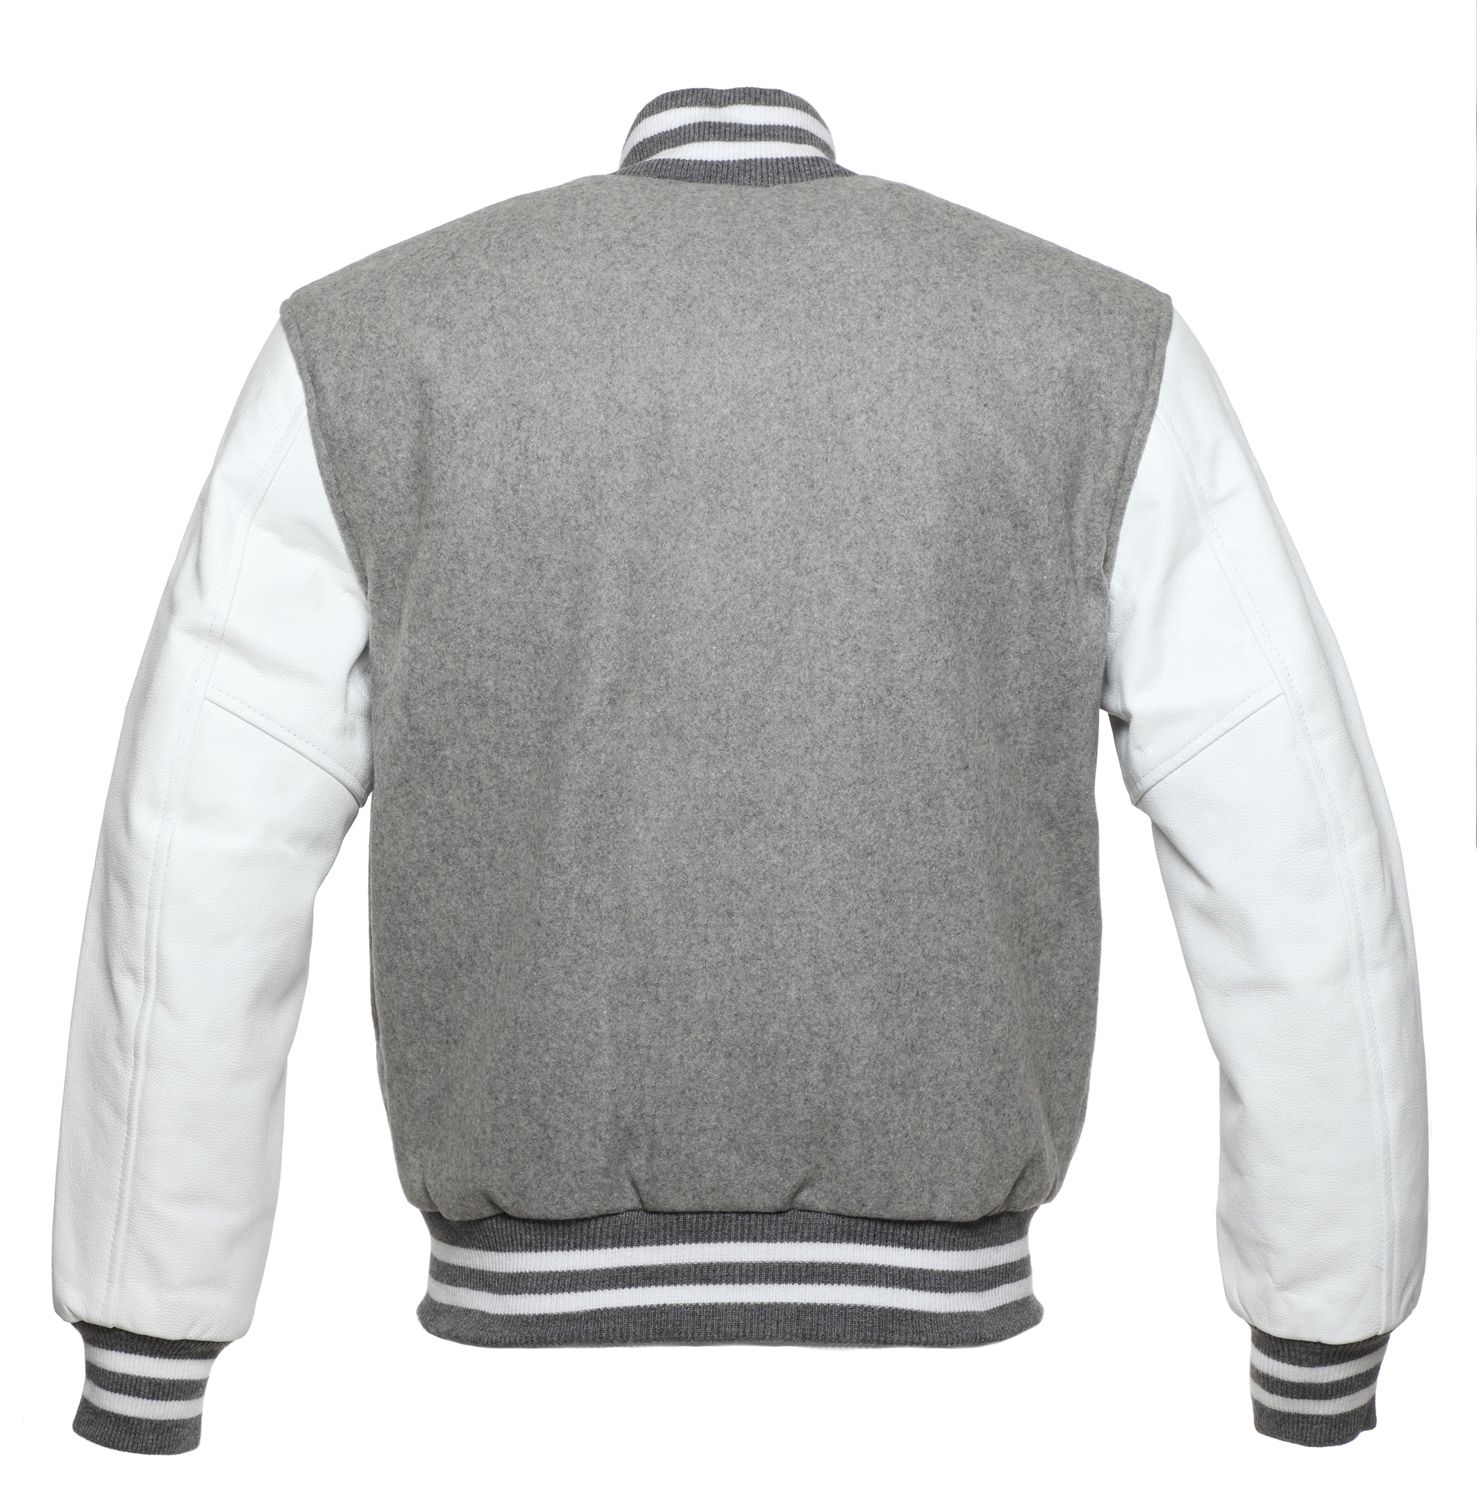 Jacketshop Jacket Grey Wool White Leather Letterman Jackets